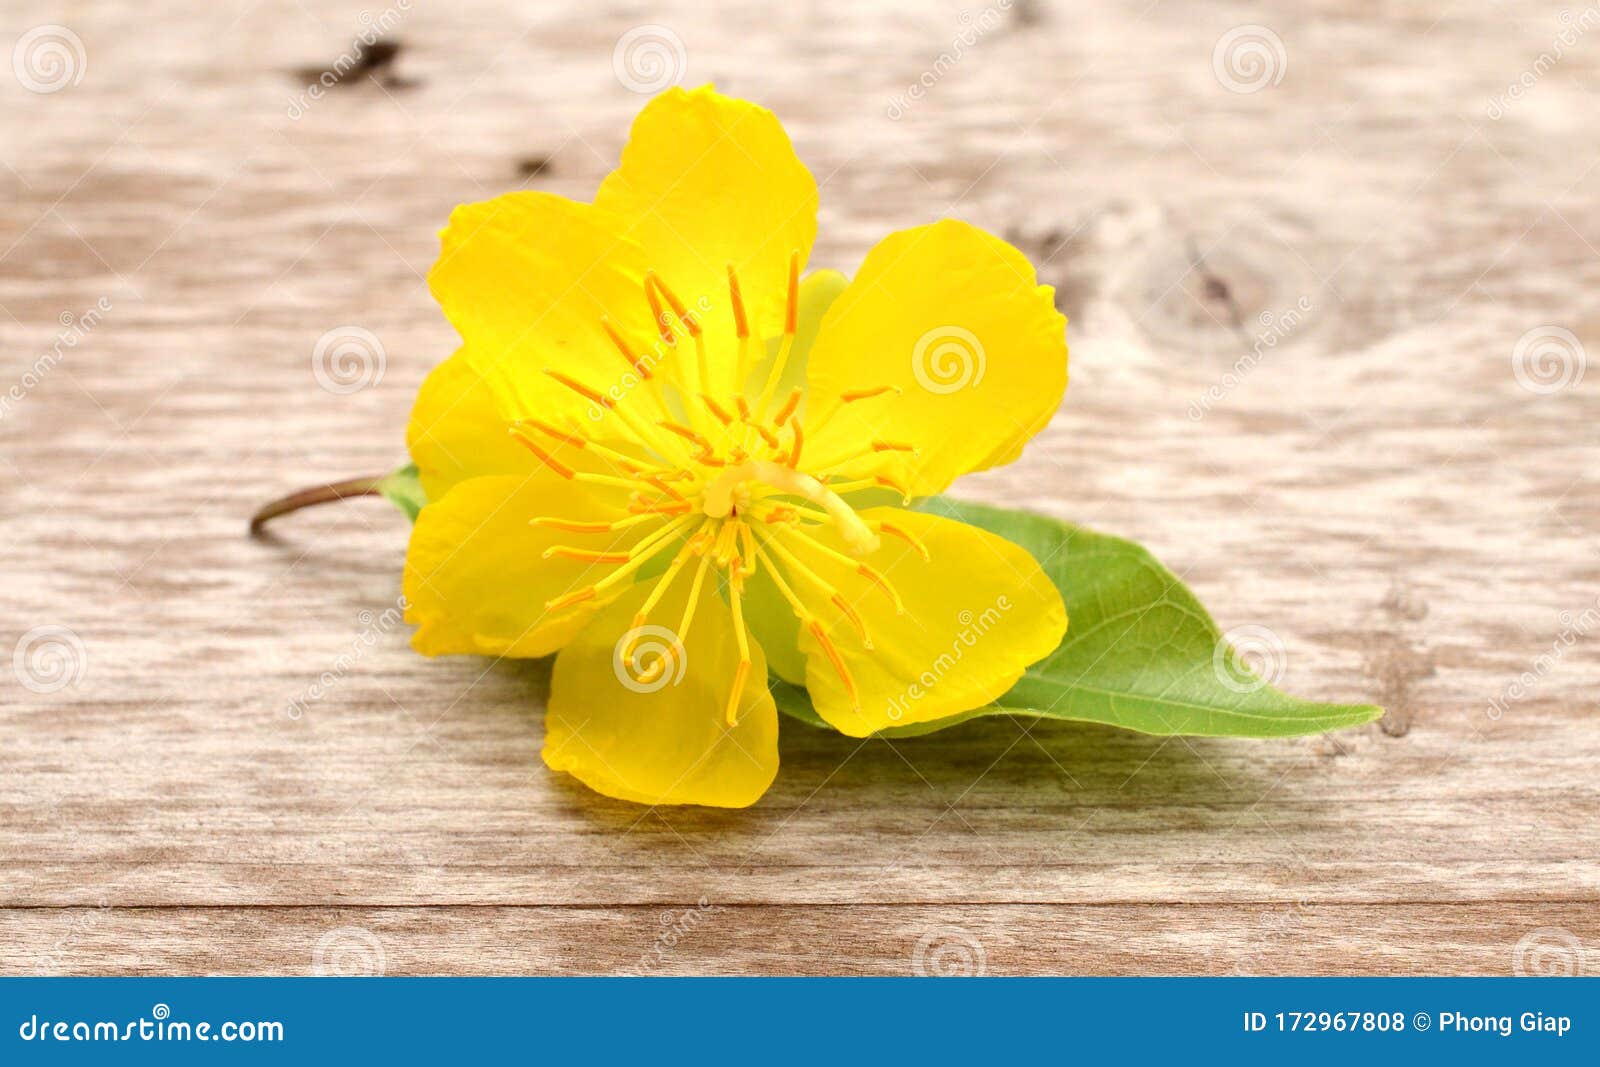 Hoa đào là một biểu tượng của mùa xuân, mang lại sự tươi mới và hy vọng. Xem hình ảnh để cảm nhận vẻ đẹp của hoa đào và thấy rõ sự khác biệt của mùa xuân.